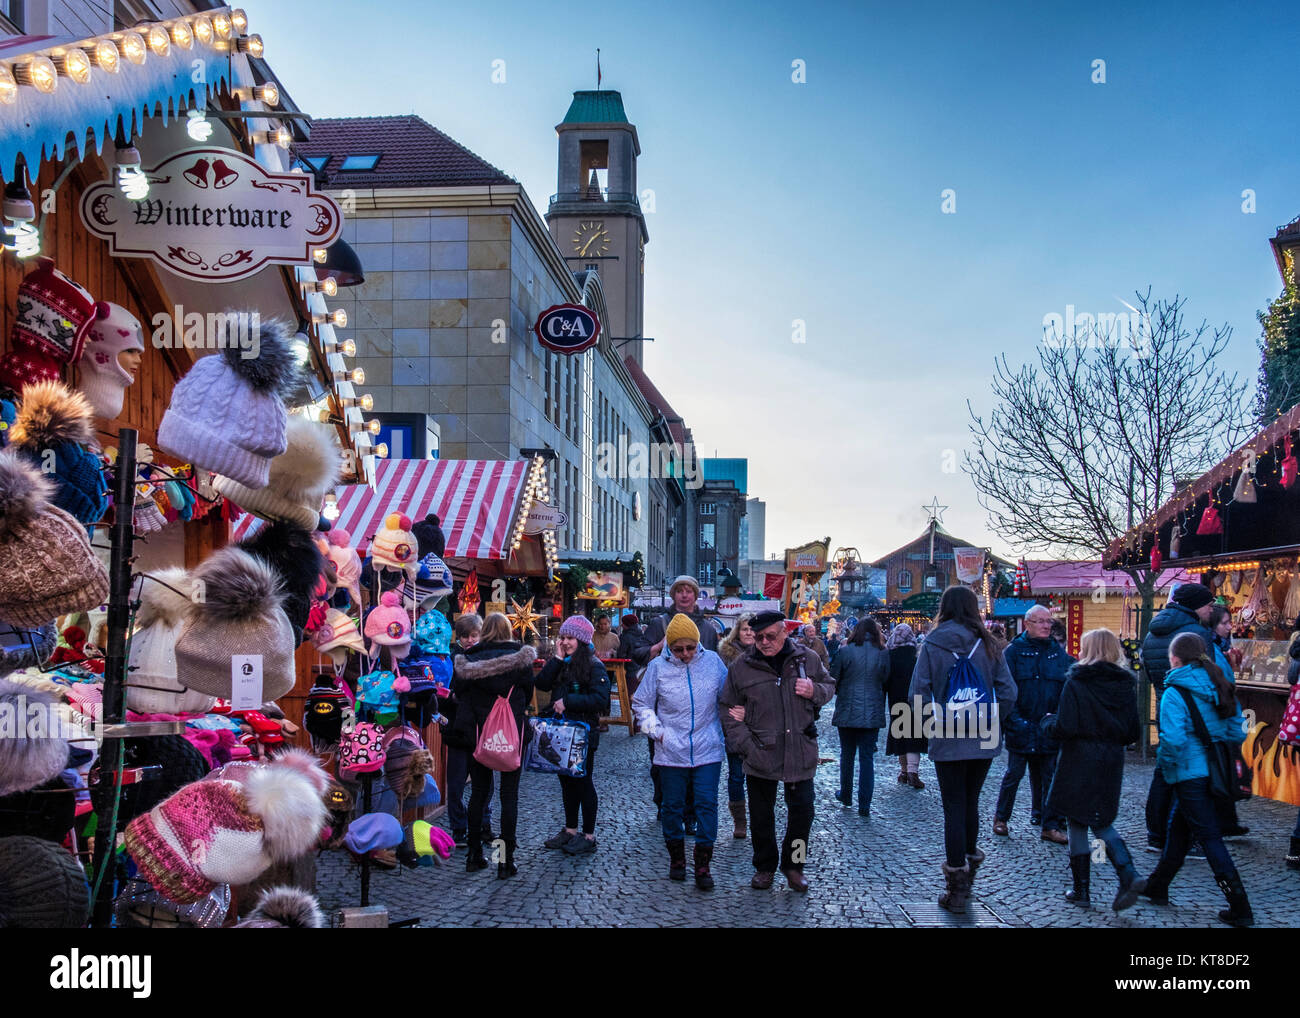 Berlin Spandau Town Hall. La gente visita tipico Natale Tedesco le bancarelle del mercato di fronte al municipio. Il Rathaus (Municipio) sulla Carl-Schurz-Straße Foto Stock